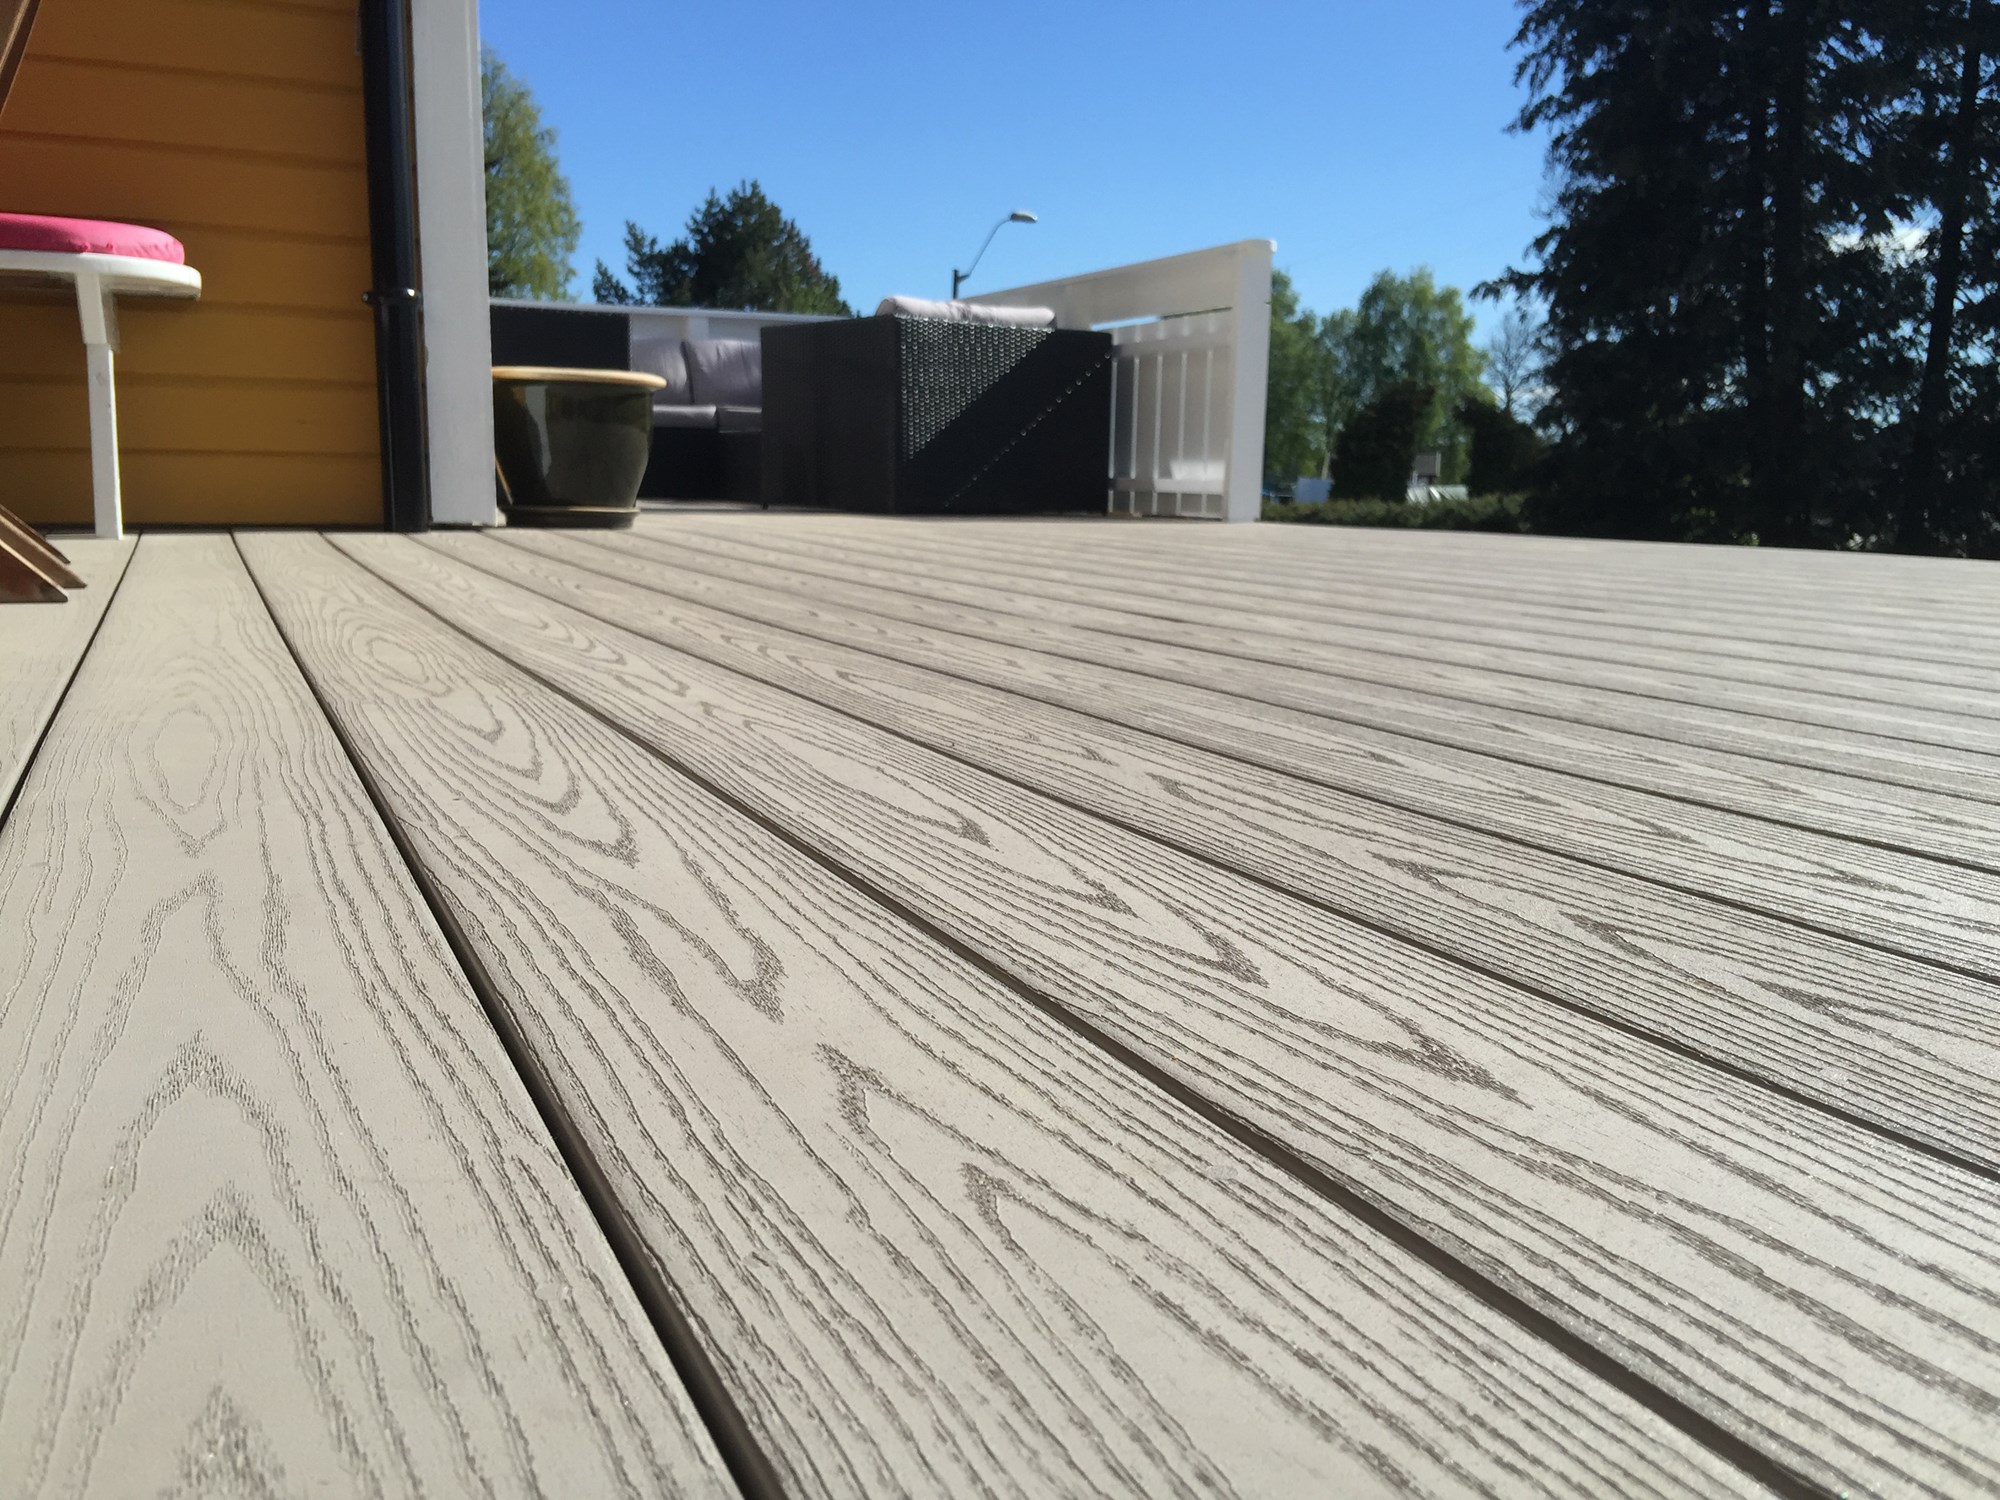 Vinnere kåret: Det beste terrasseprosjektet 2015 -  - Jafo